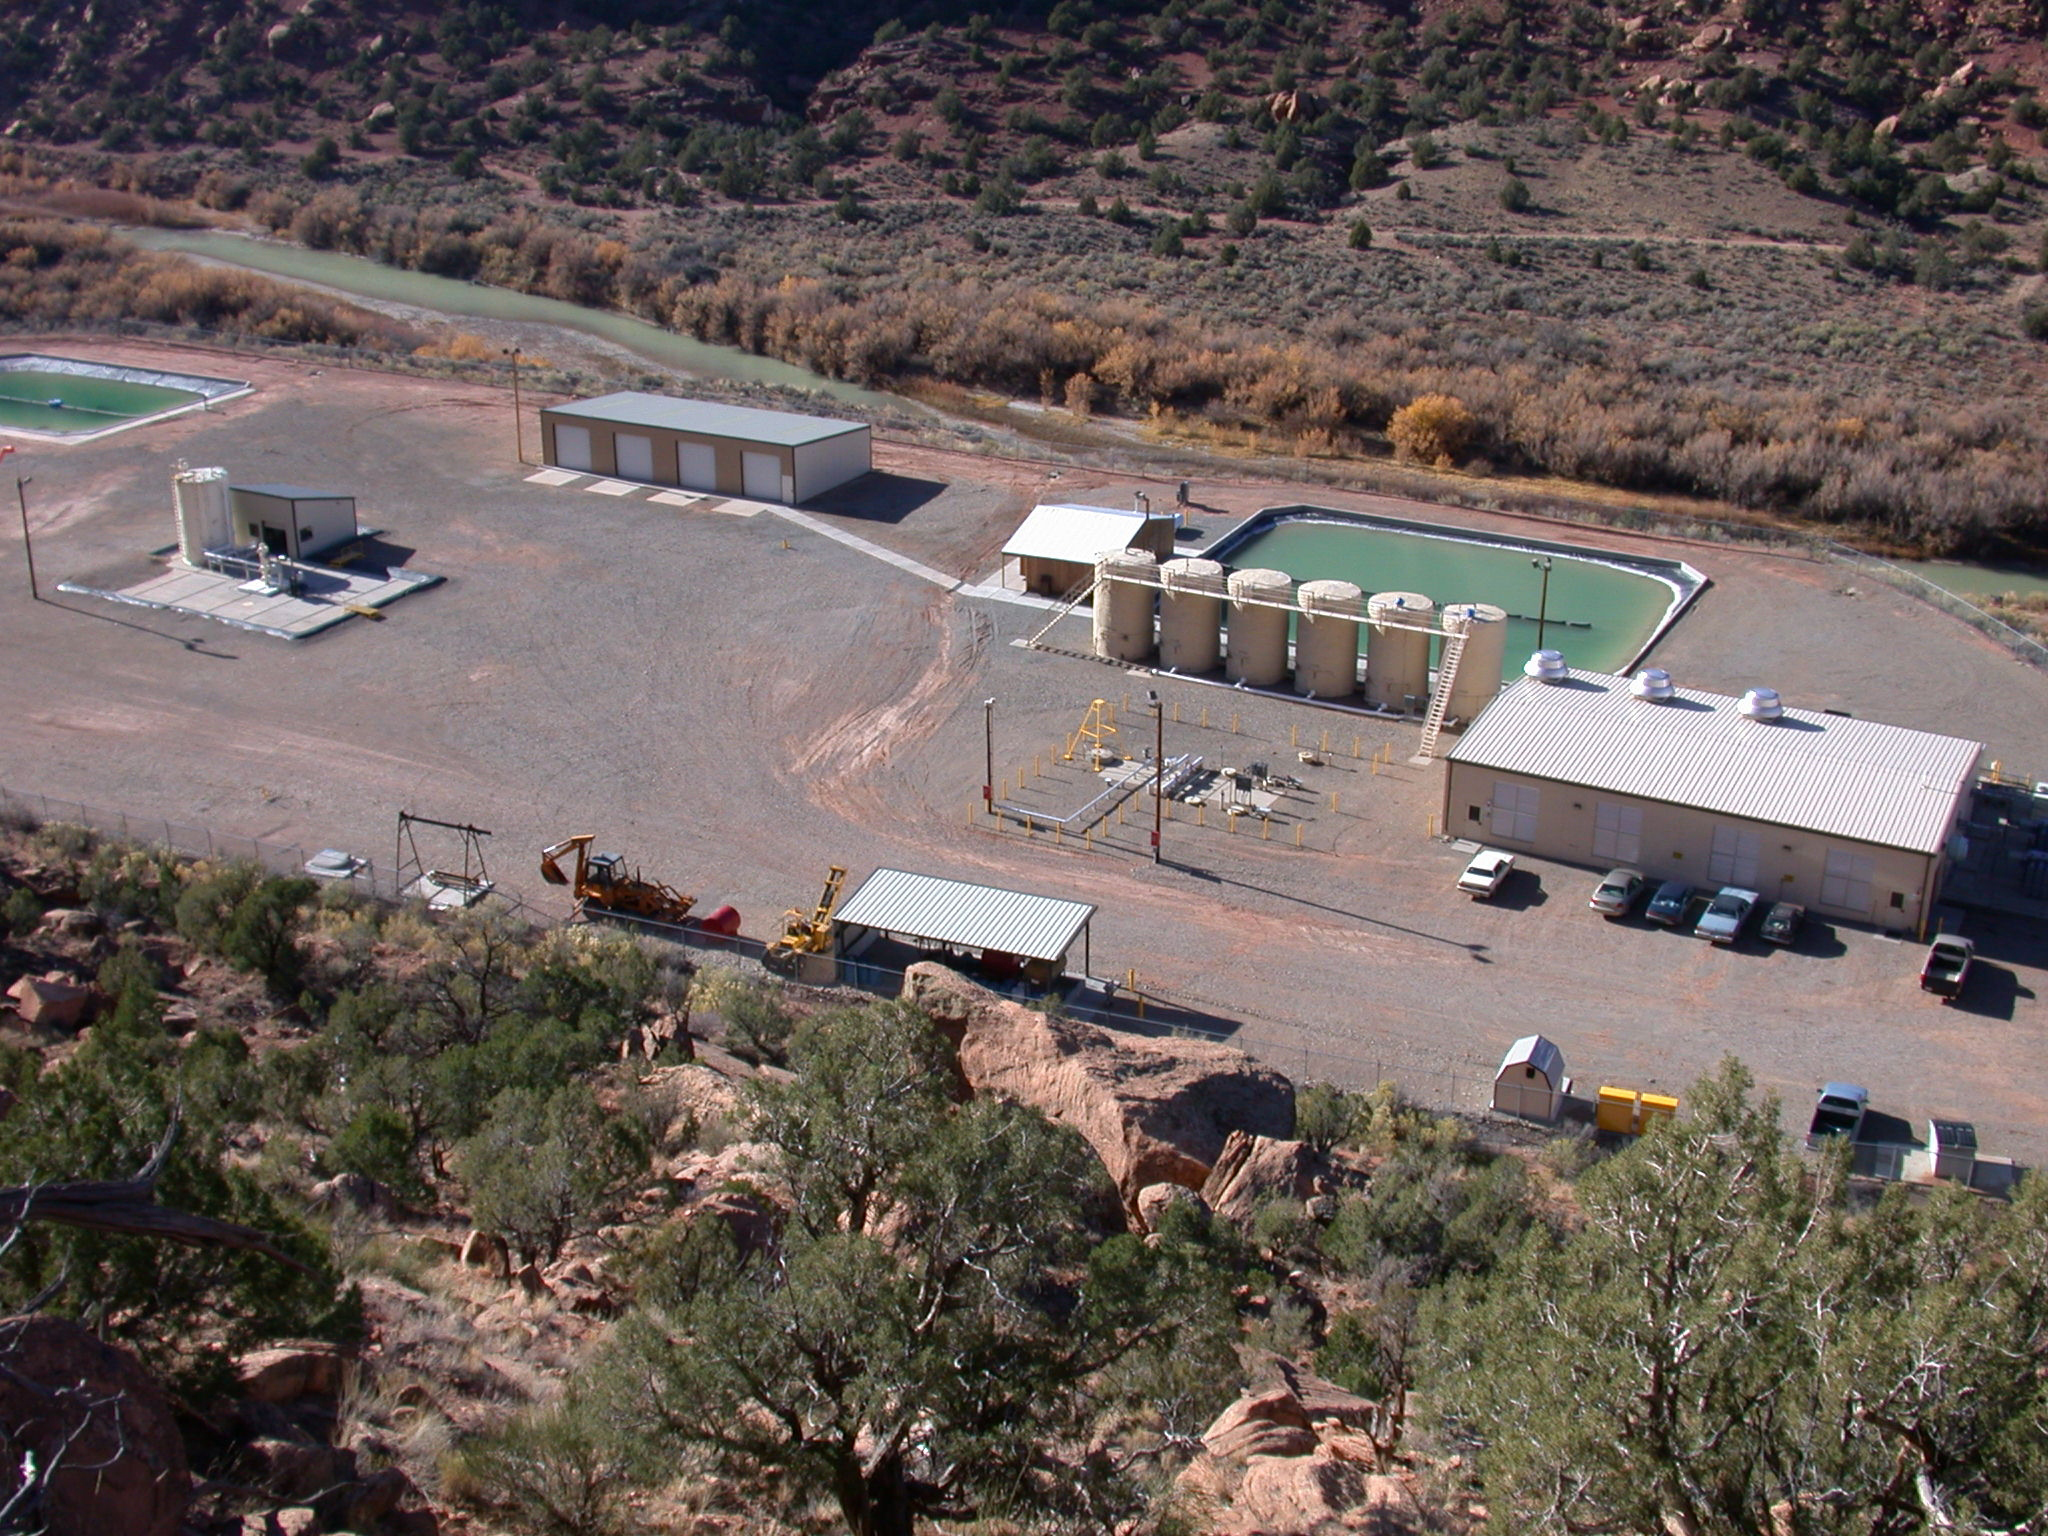 Paradox Valley Unit Facility in western Colorado